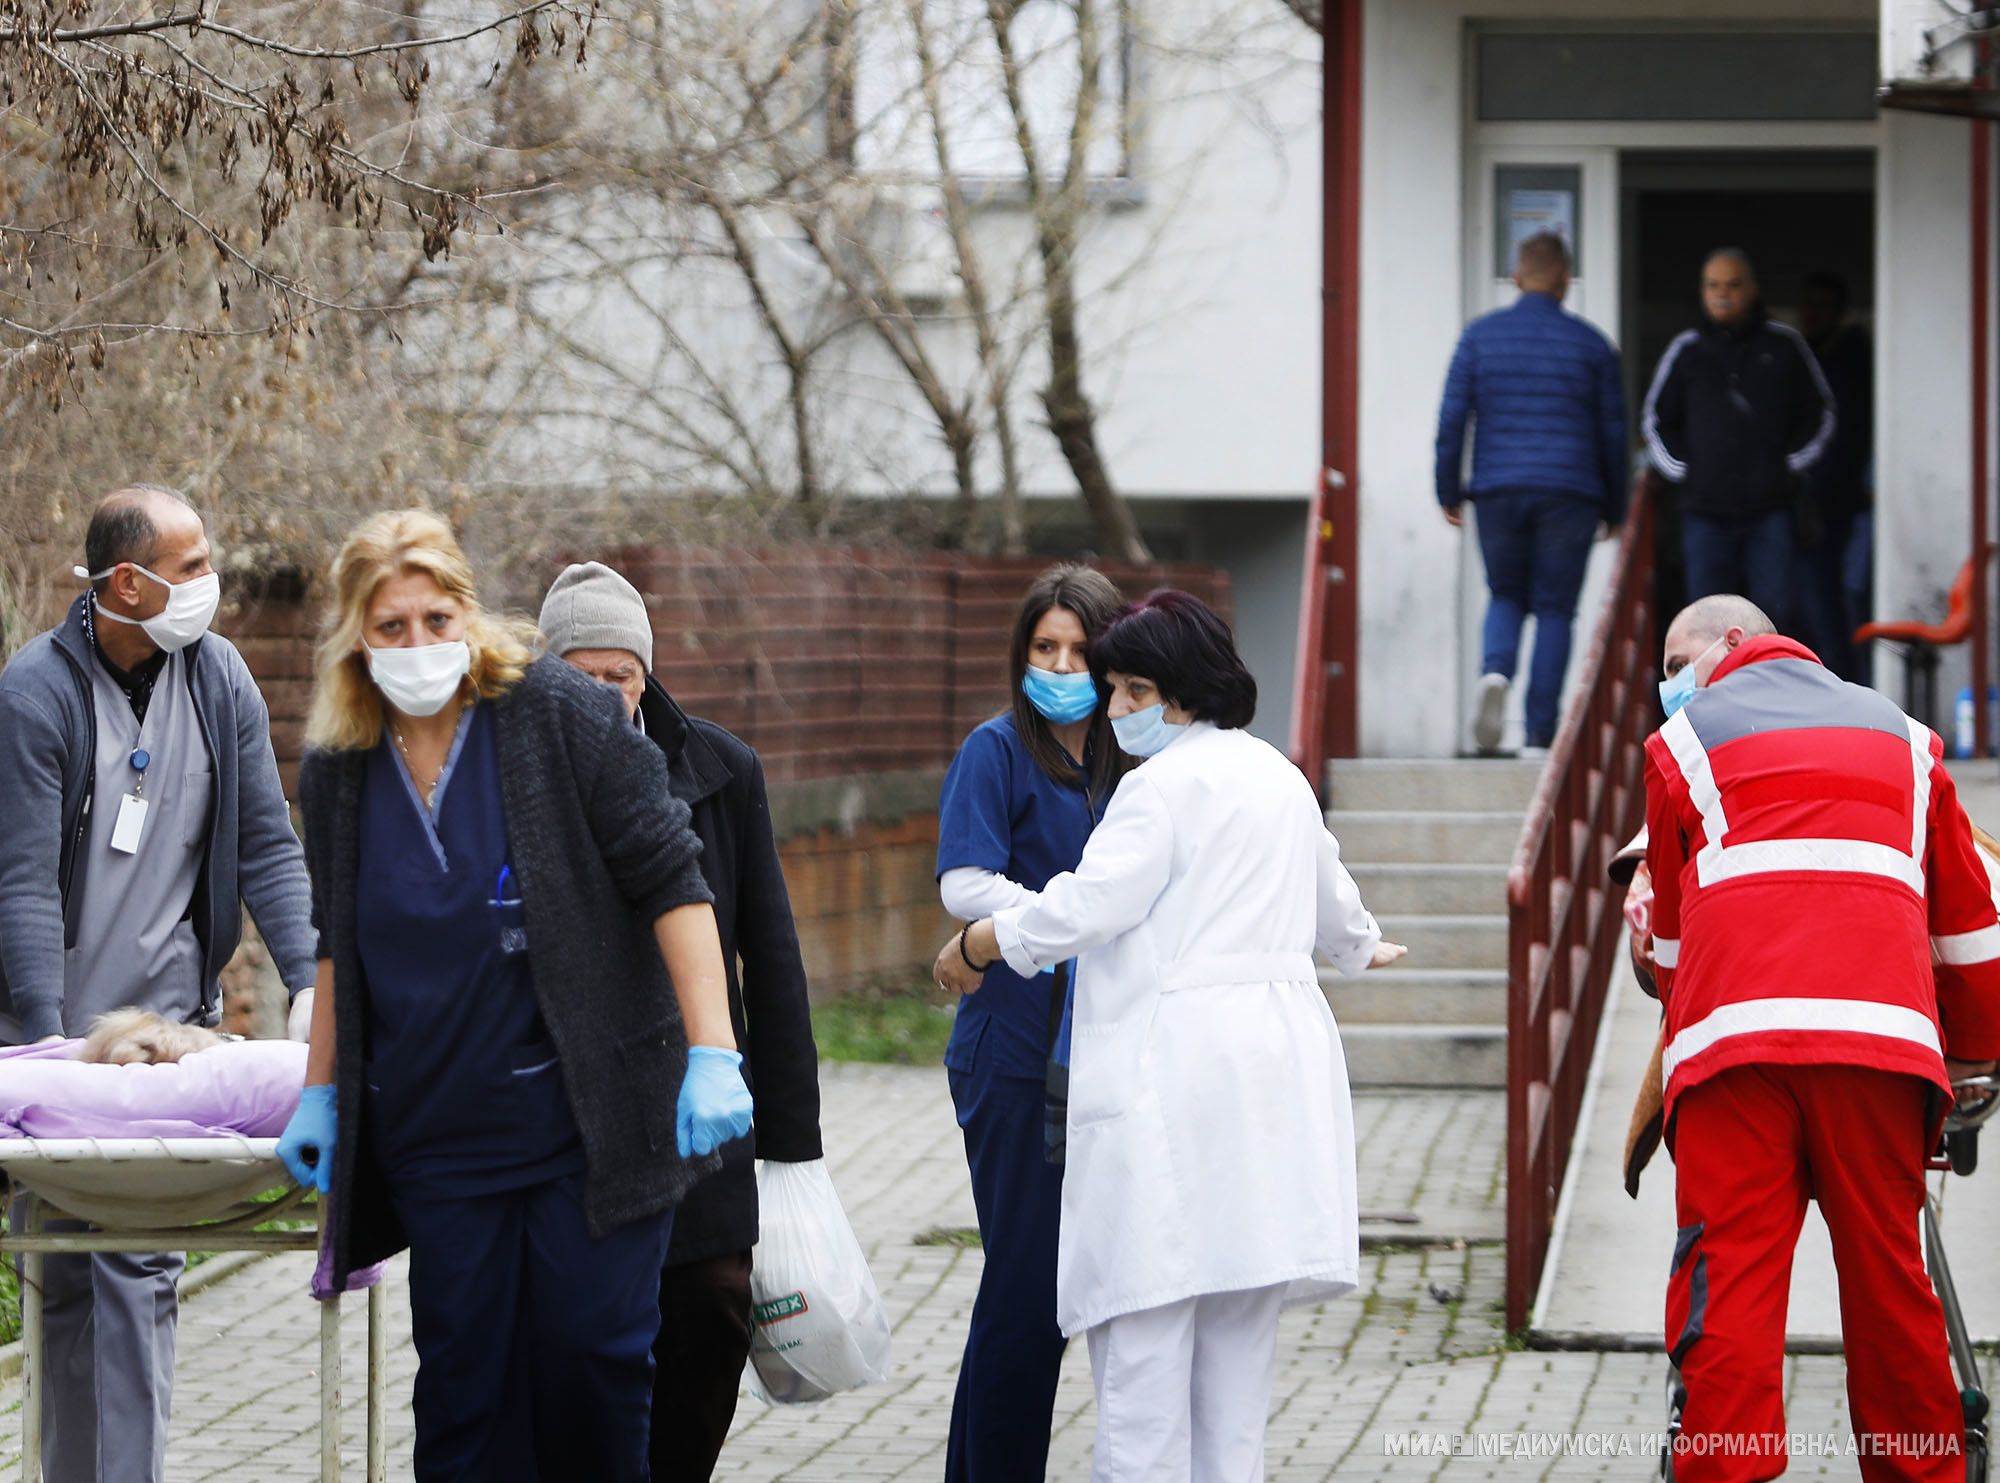 Infektologët: Maqedonia po kalon në pikun e valës së tretë të pandemisë